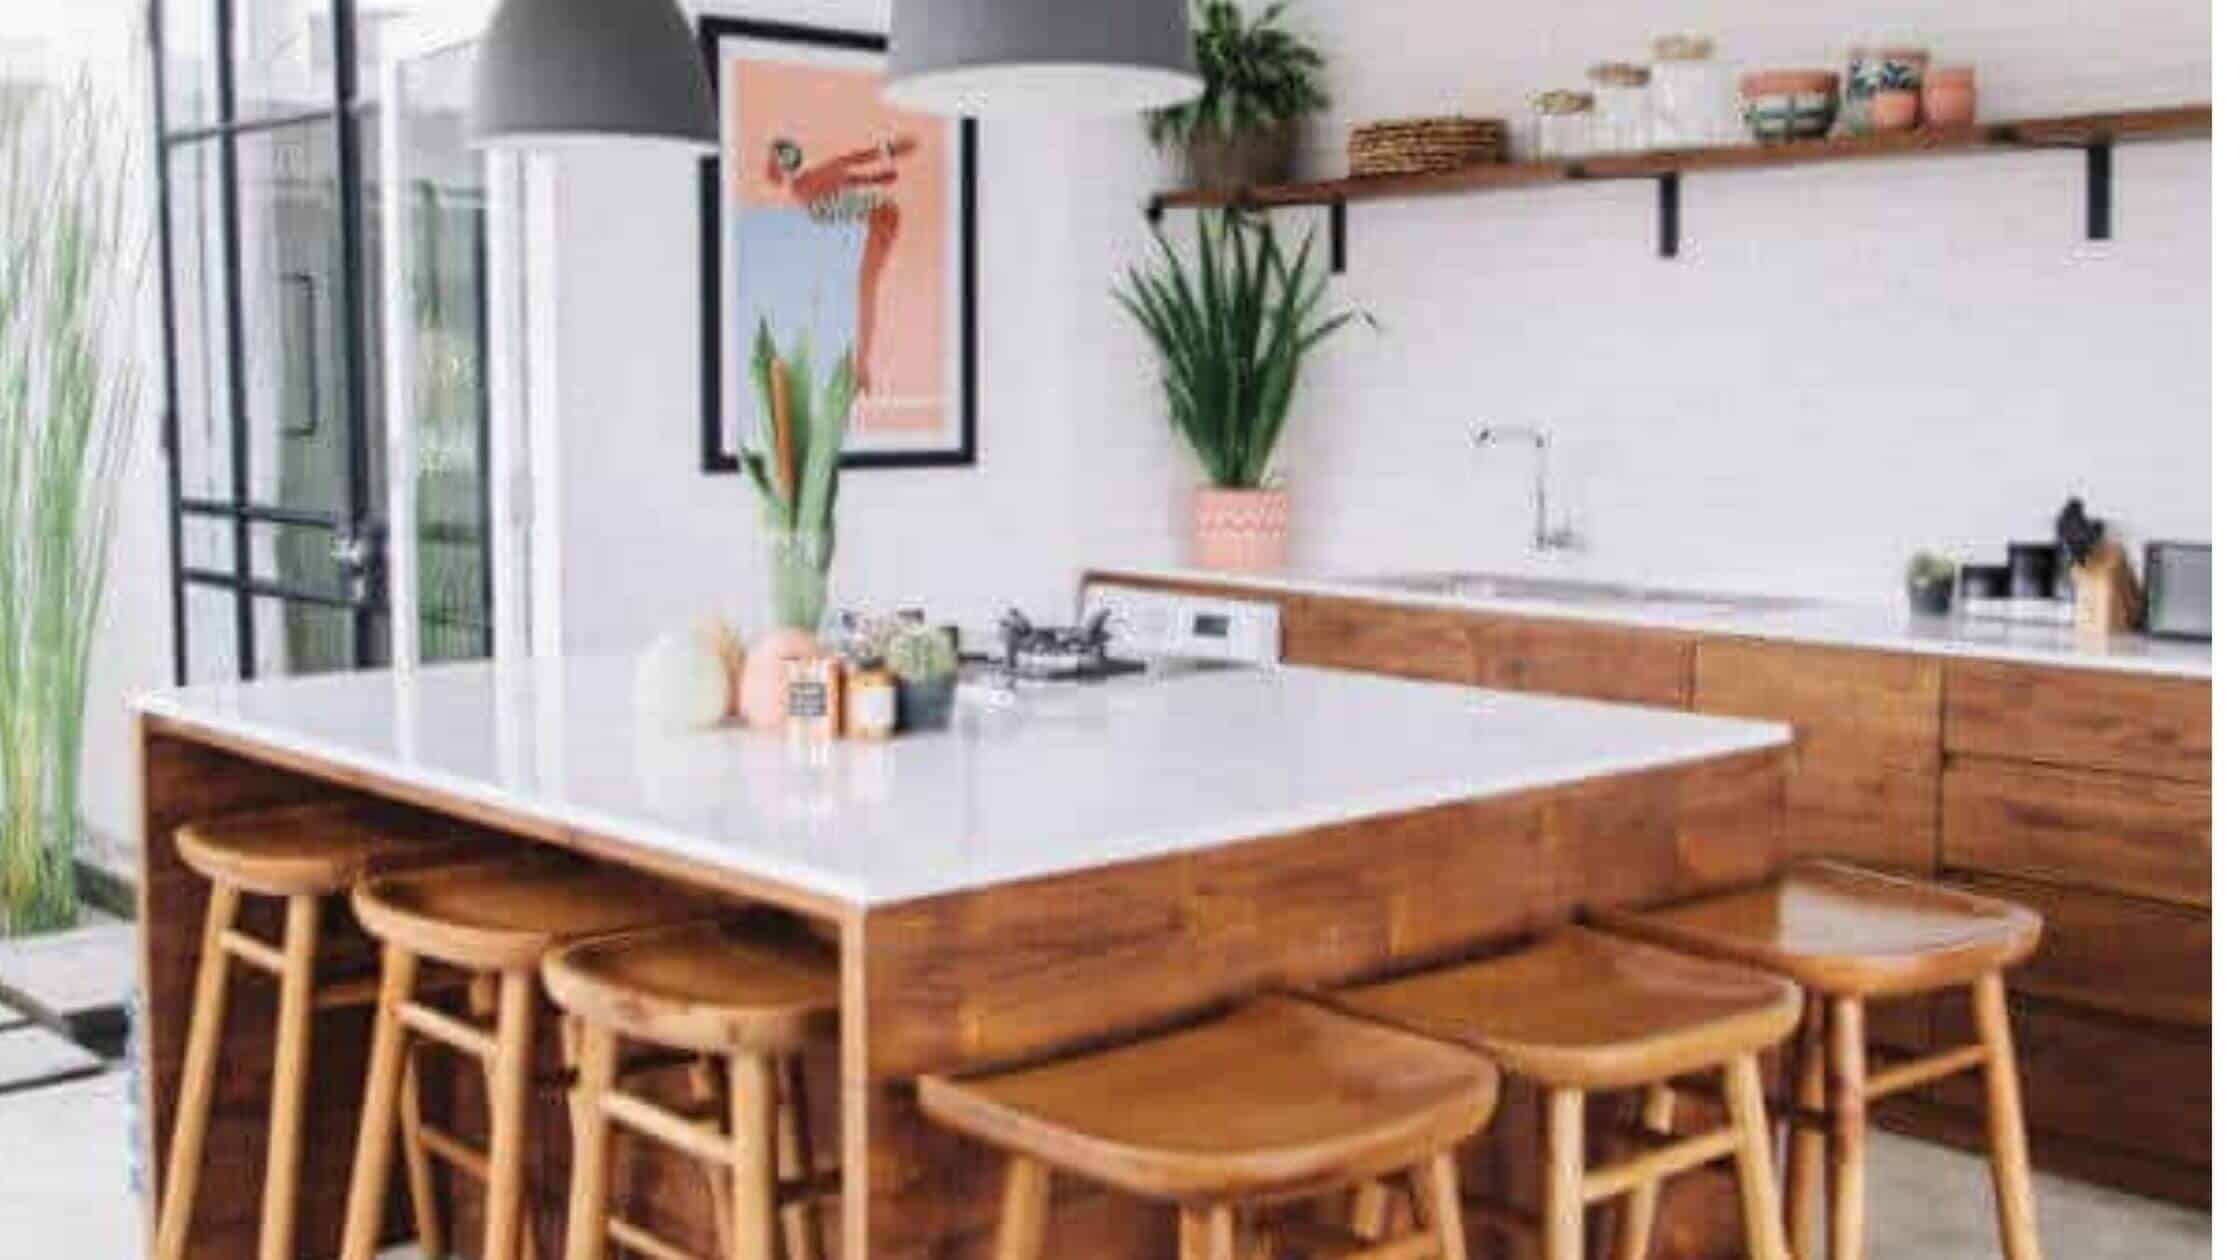 Home Kitchen Design Ideas